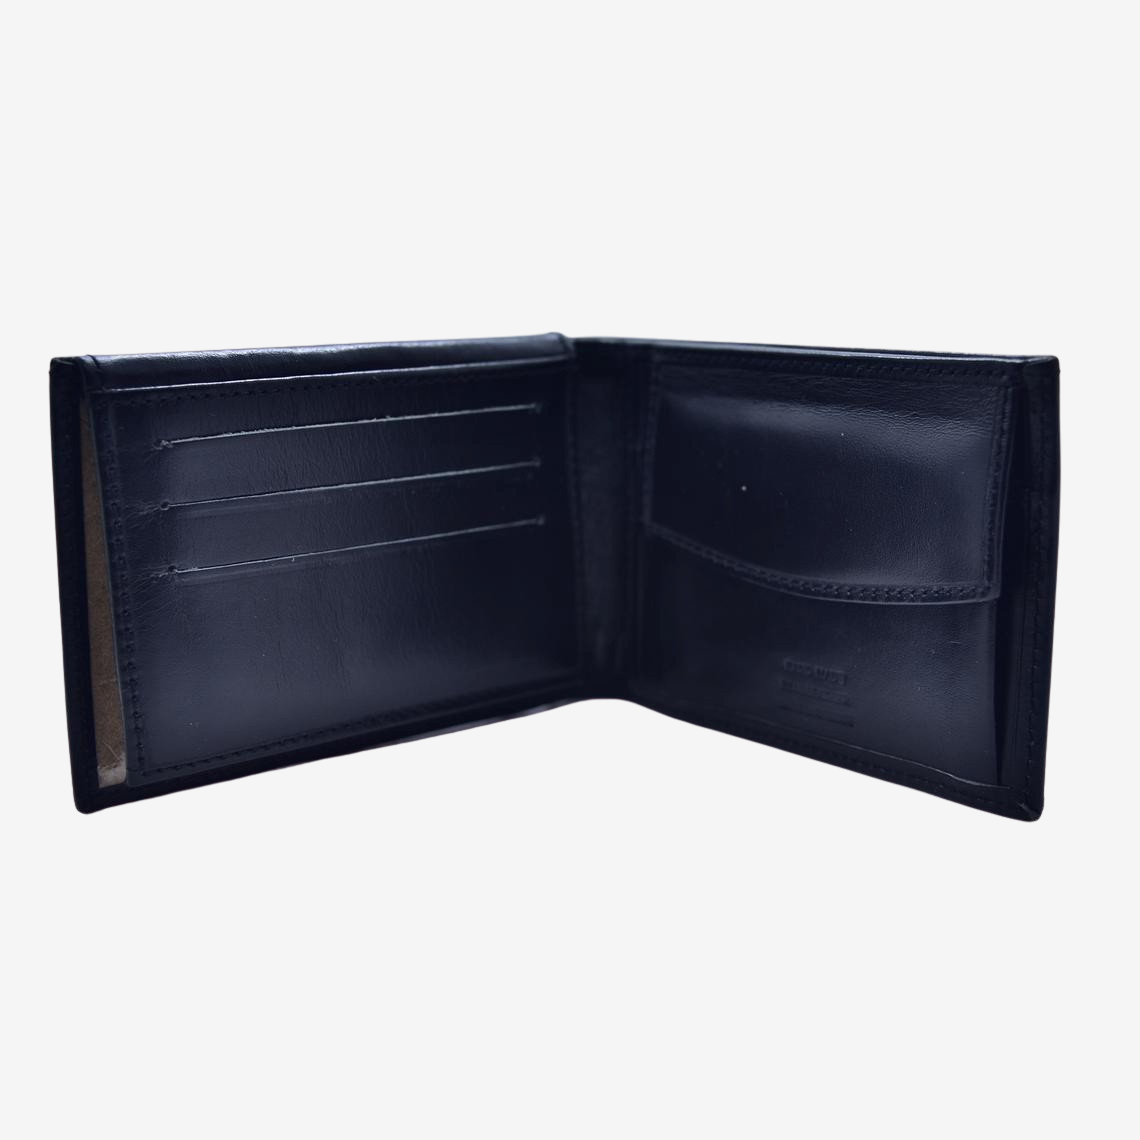  greek leather wallets